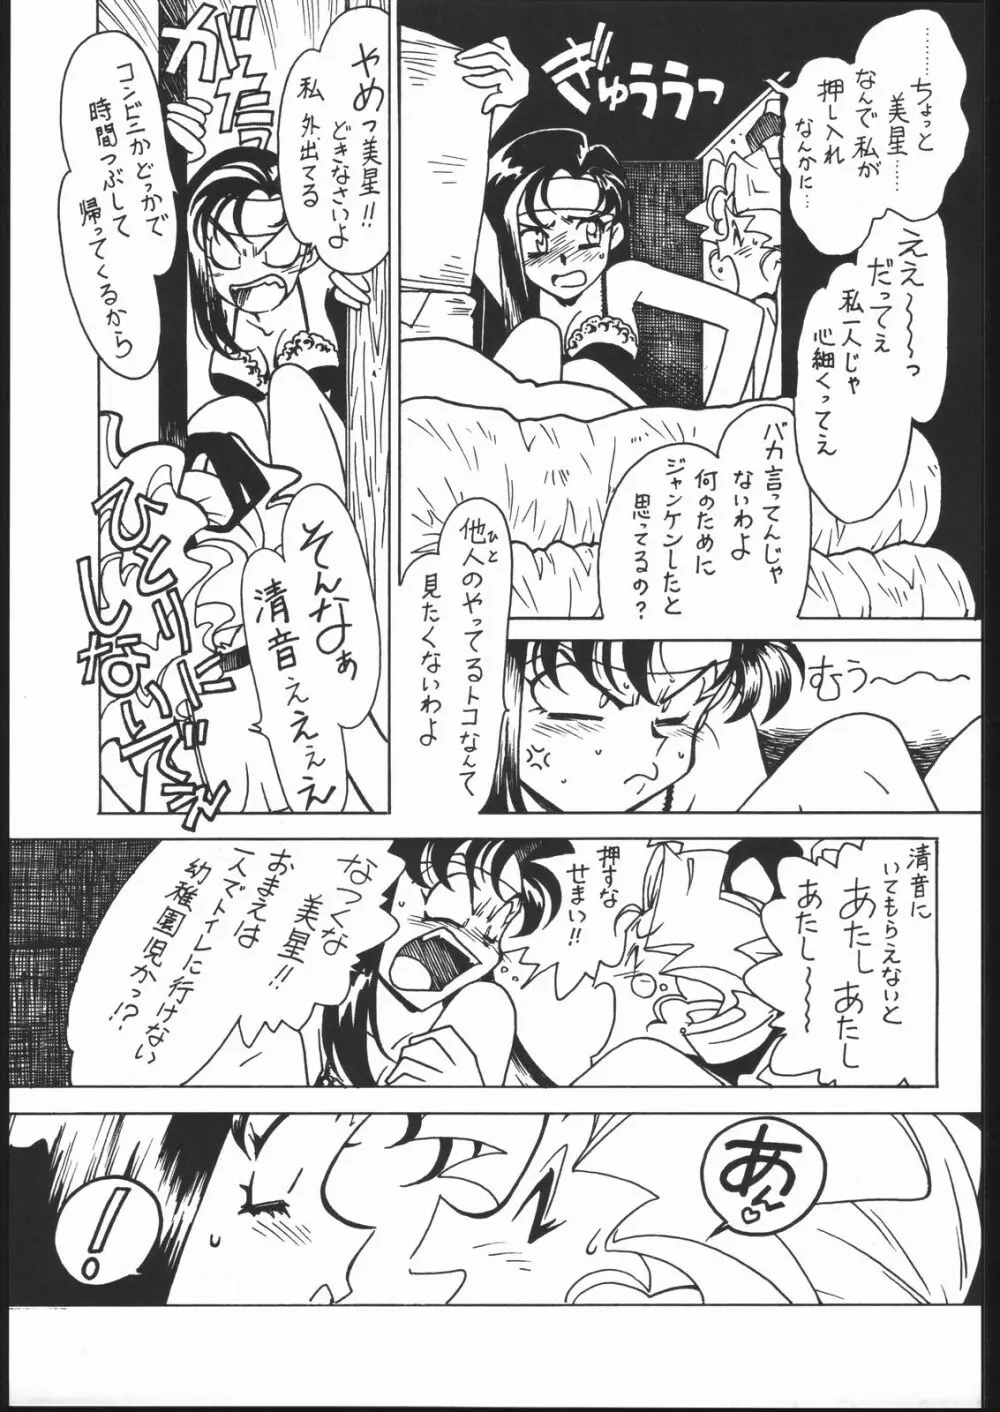 凶悪的指導 Vol.11 じゅんび号 Version 2 6ページ